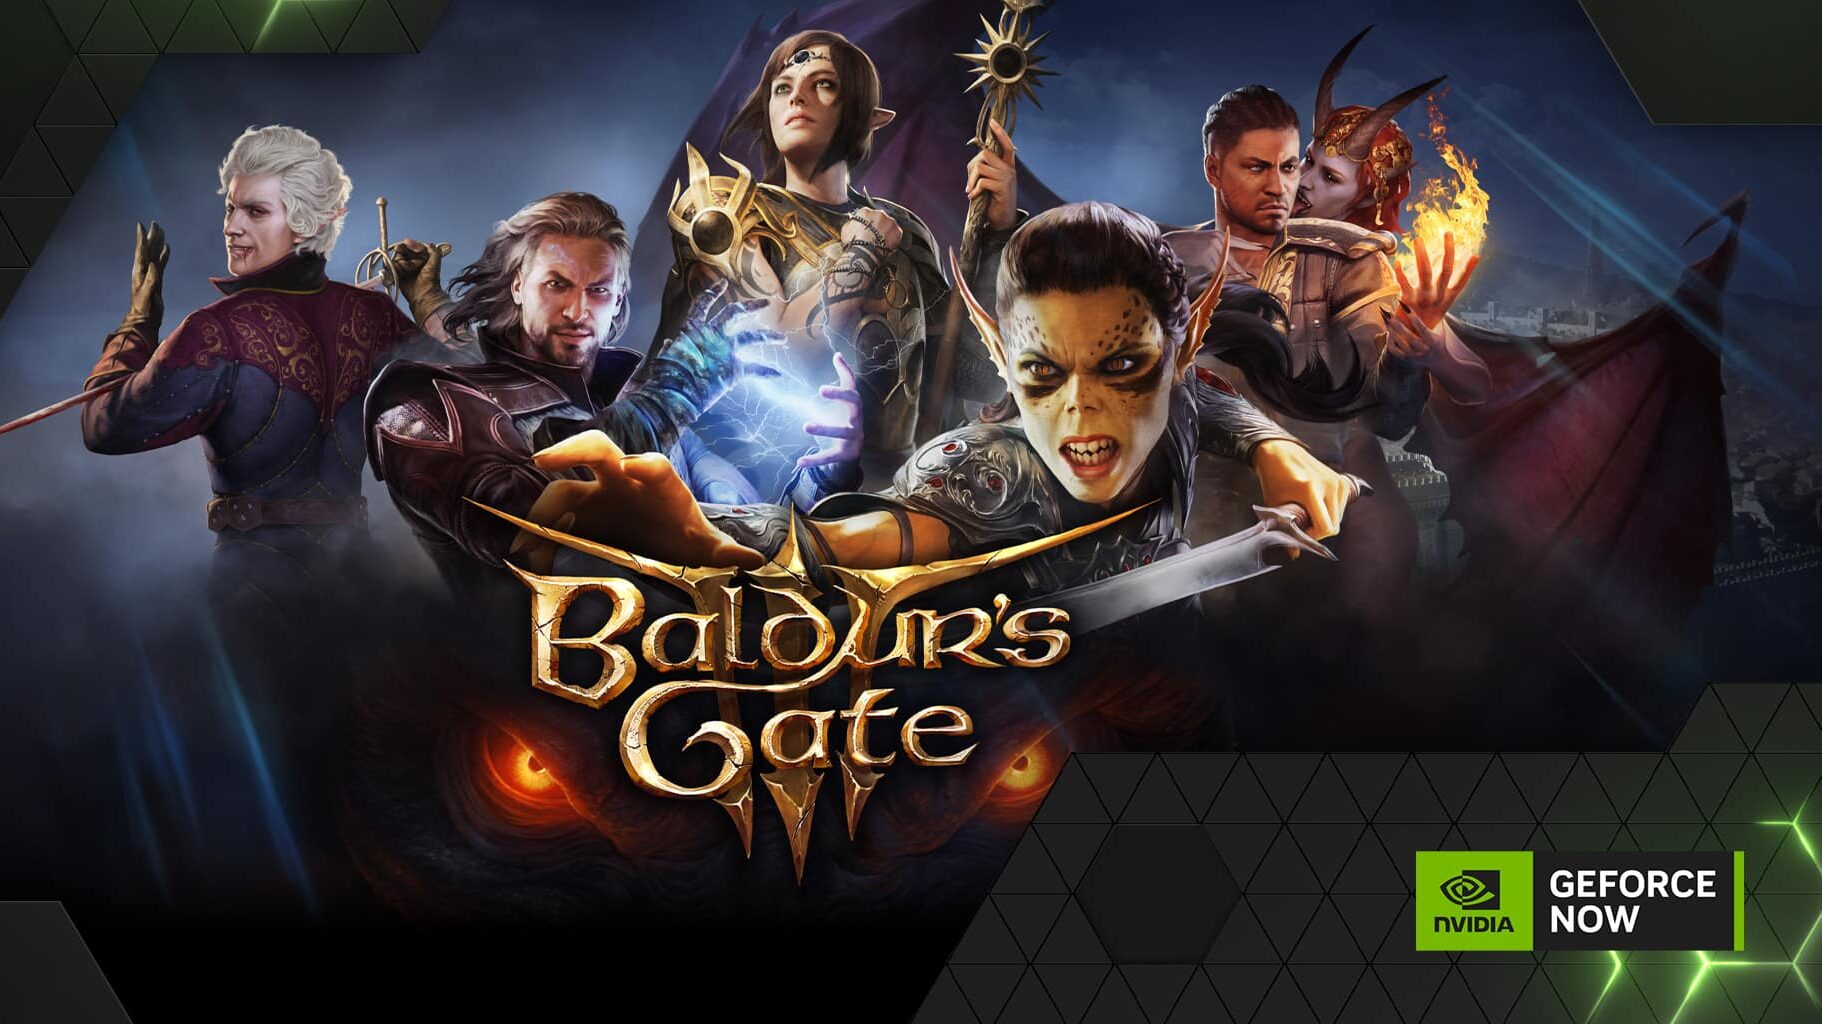 Baldur's Gate 3 Game Banner with GeForce NOW Logo